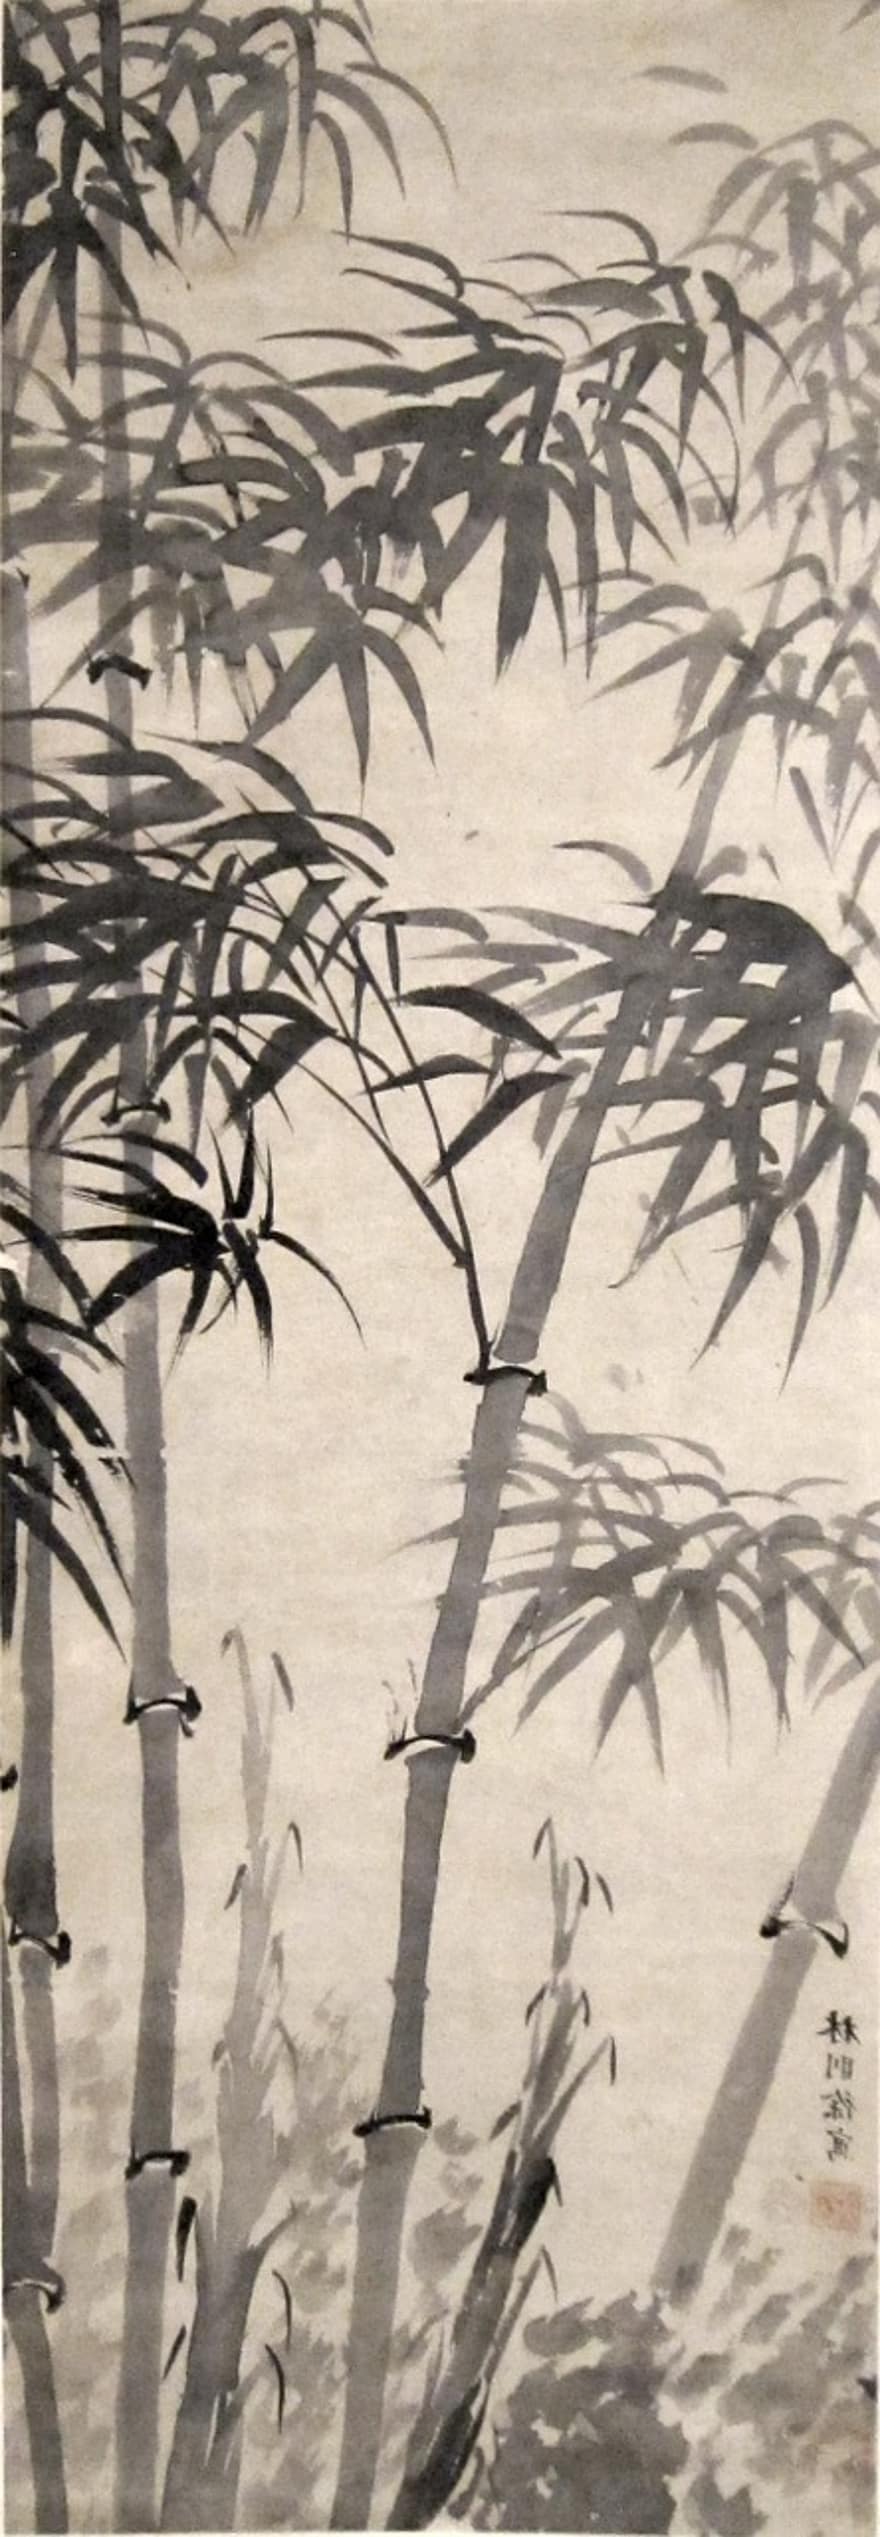 maleri, i, bambus, blekk, dekorasjon, dekor, svart, symbol, kinesisk, eldgammel, kultur